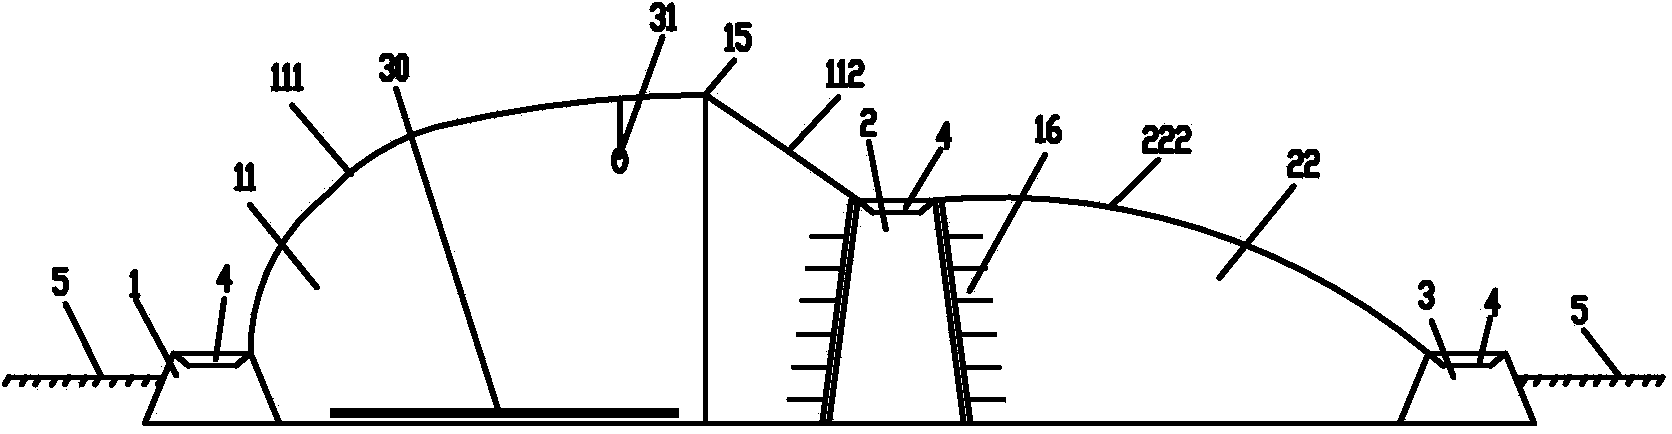 复合型土墙-冠层结构生态节能日光温室(公开号：CN103749210A)